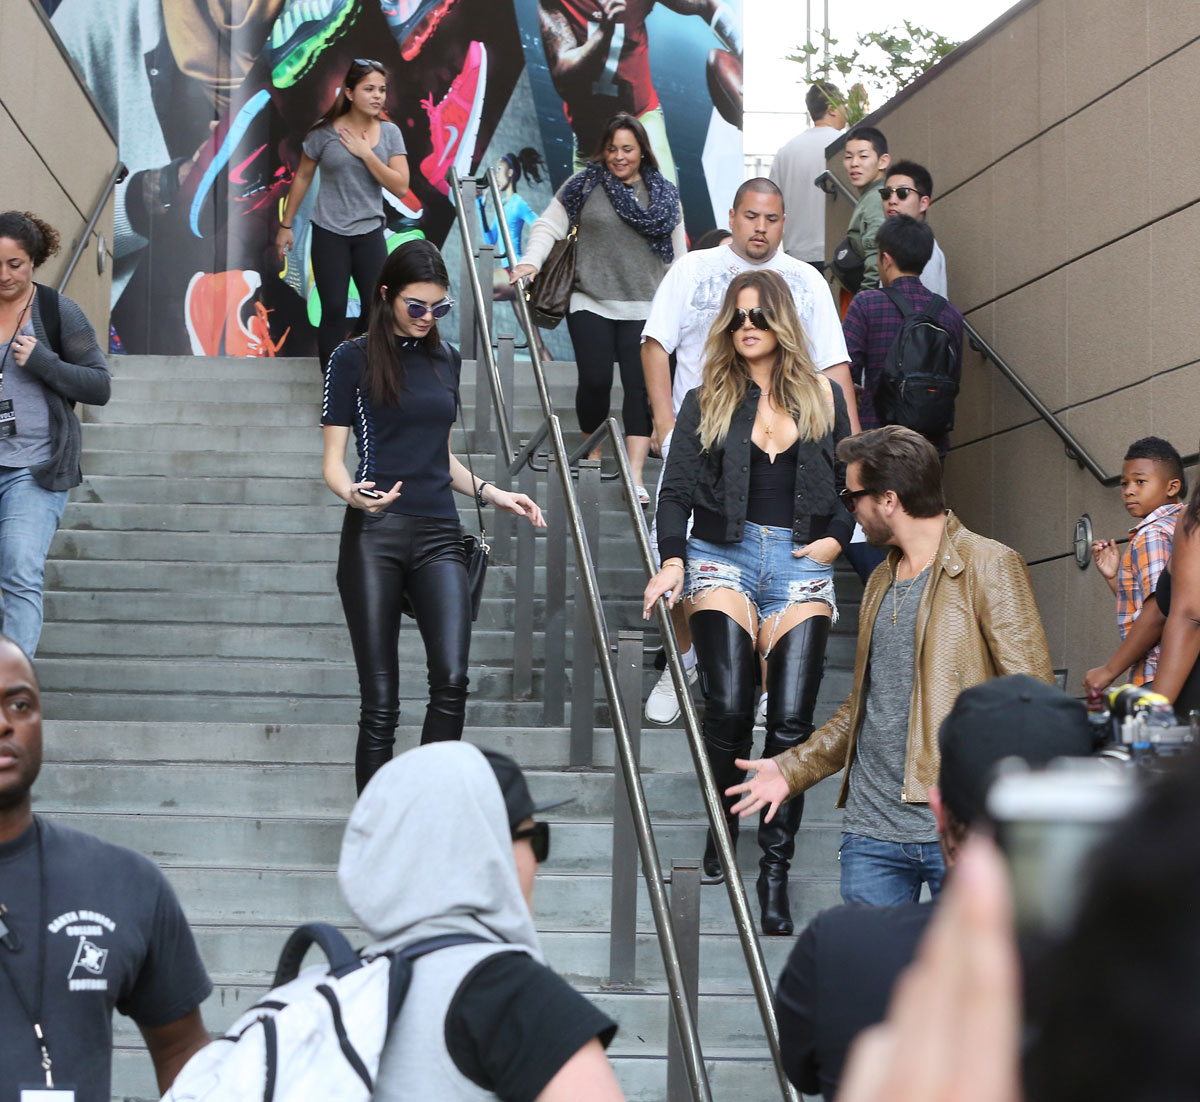 Khloe Kardashian & Kendall Jenner attended a Rick Ross concert